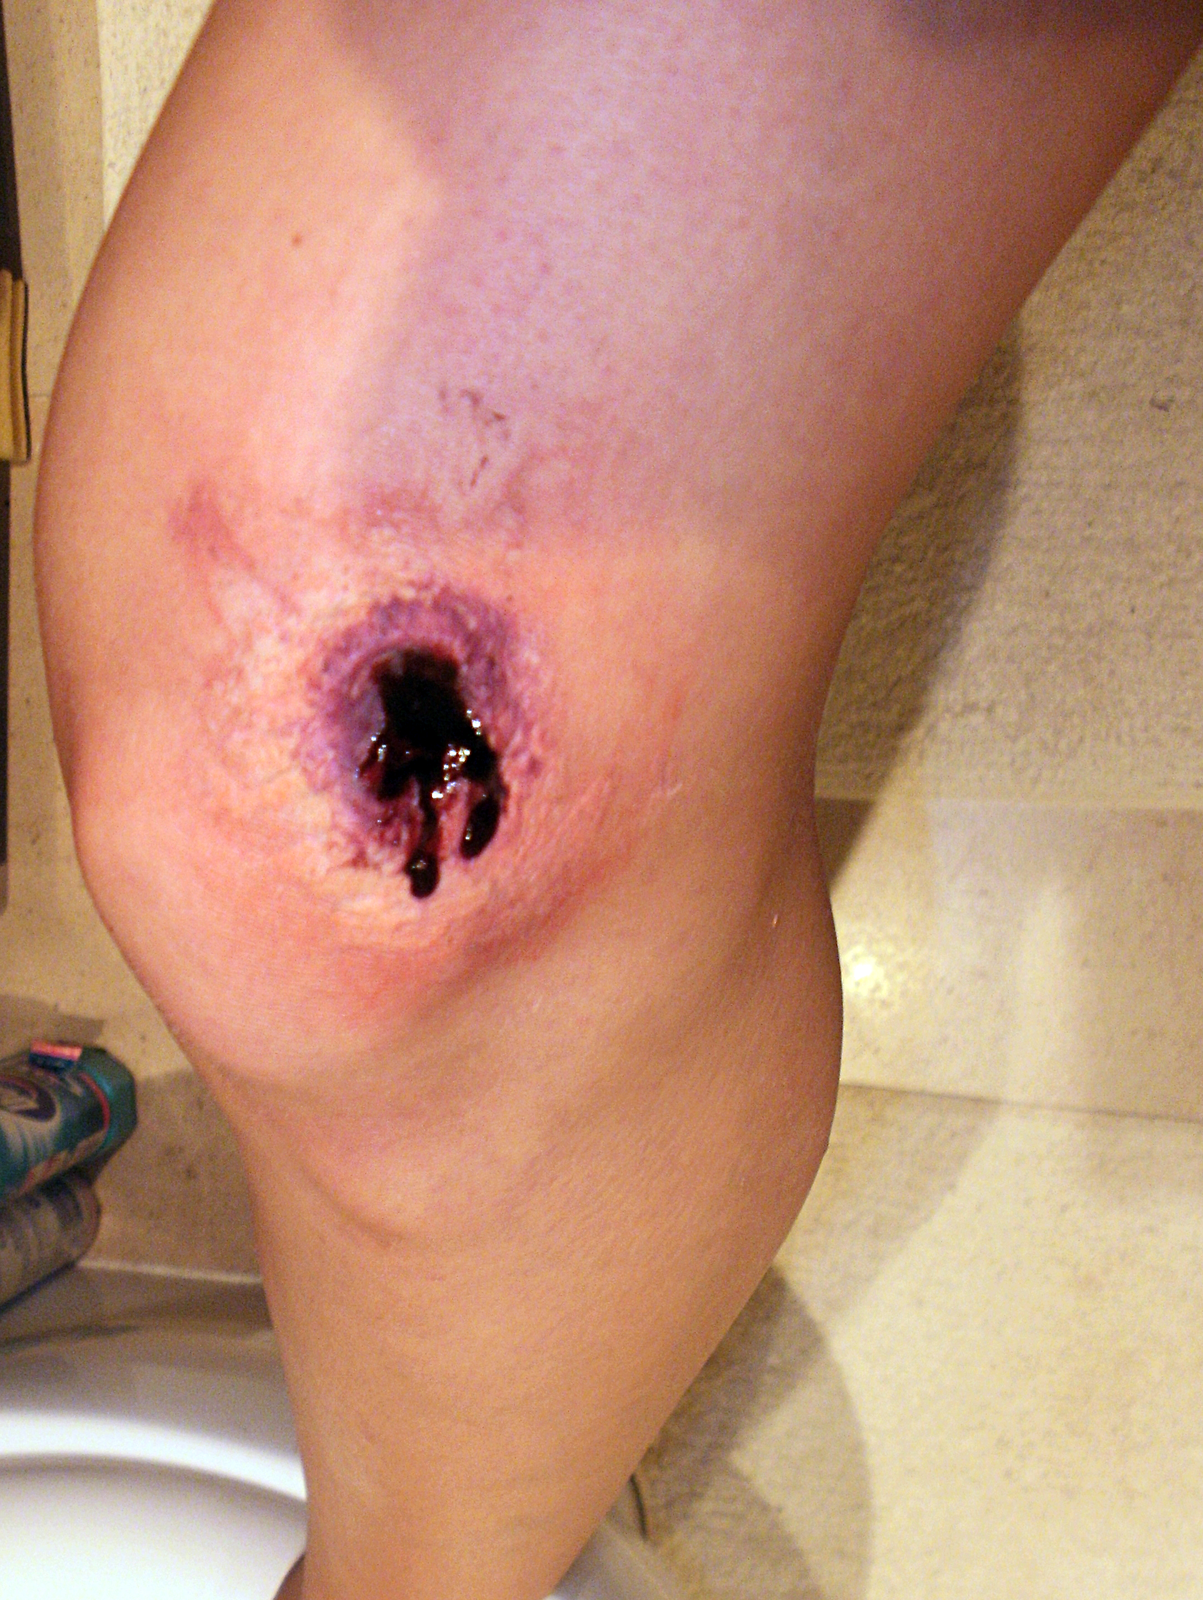 Galeria siedmiu zdjęć prezentujących różne rodzaje ran. Zdjęcie numer cztery przedstawia ranę postrzałową. Zbliżenie na kolano prawej nogi poszkodowanego. Na wewnętrznej stronie nogi, powyżej kolana, fioletowa owalna rana.